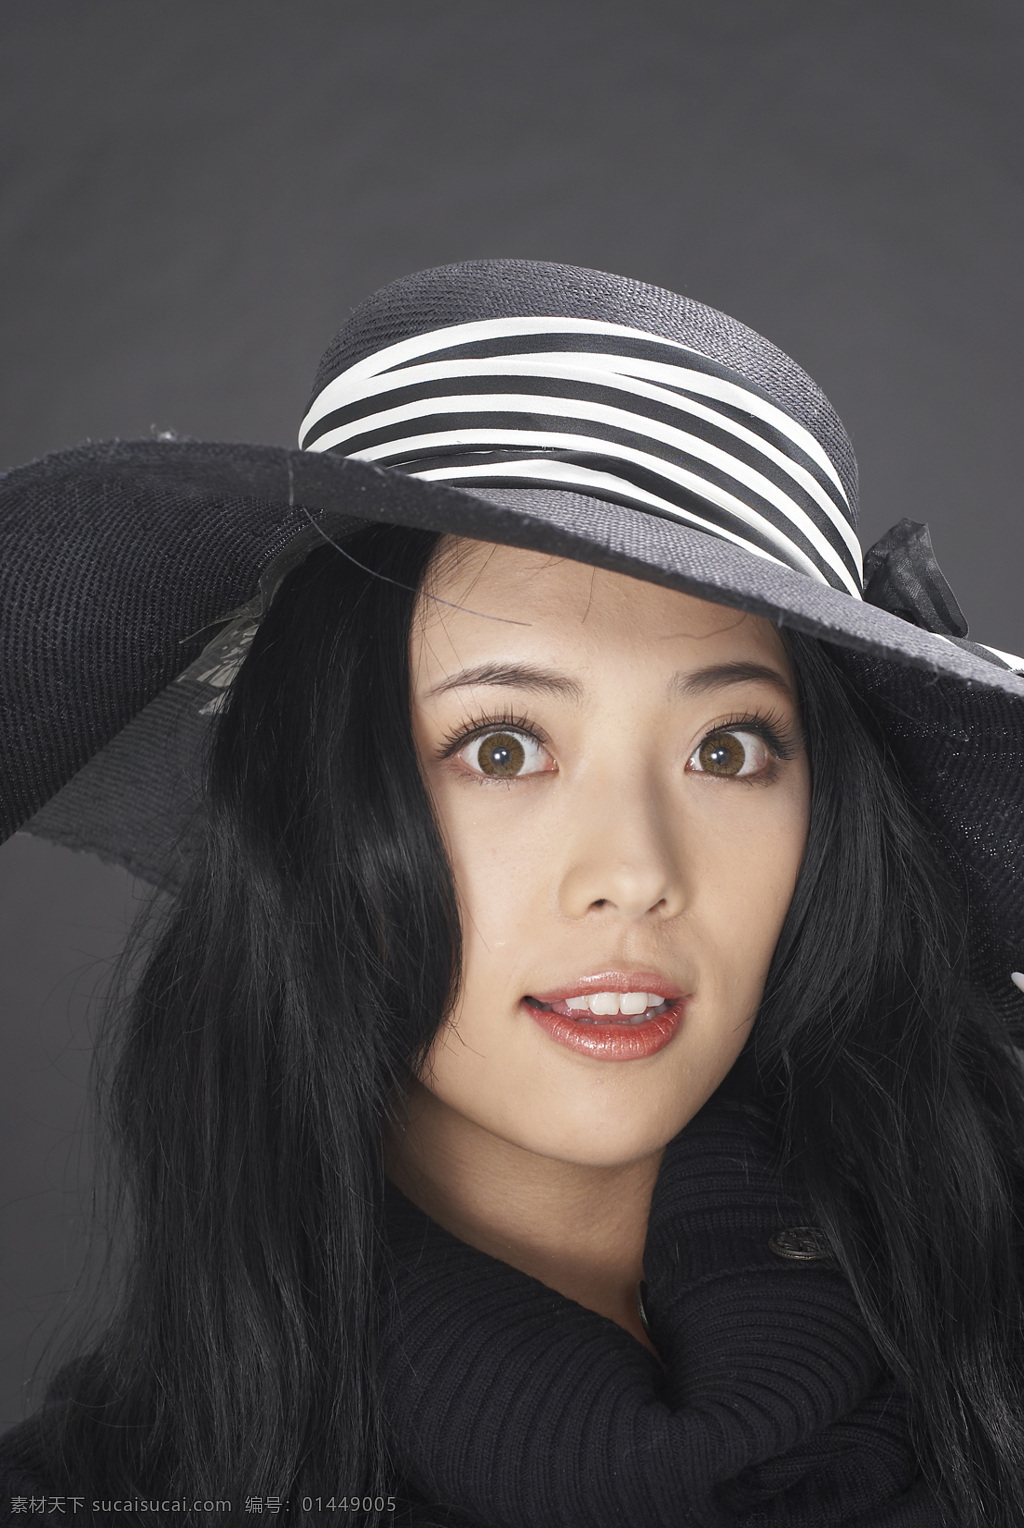 韩国模特 kimhyosun 模特 漂亮美女 性感美女 韩国美女 高个美女 时尚美女 时装模特 人物图库 女性女人 摄影图库